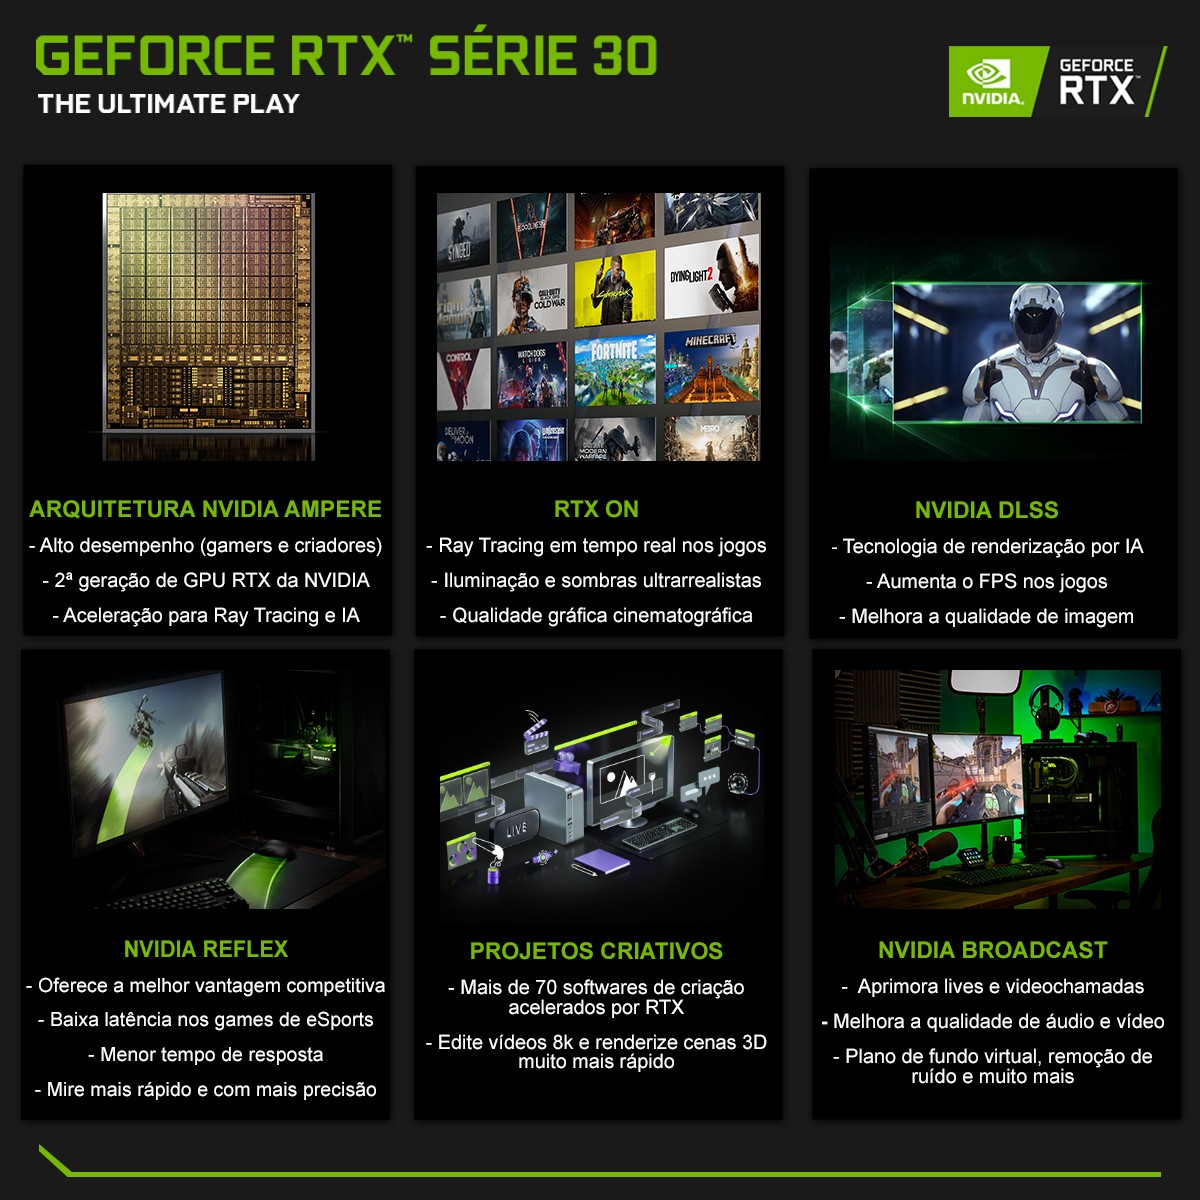 Placa de Video GALAX, GeForce RTX 3060, (1-Click OC), LHR, 12GB, GDDR6, DLSS, Ray Tracing, 36NOL7MD2NEX